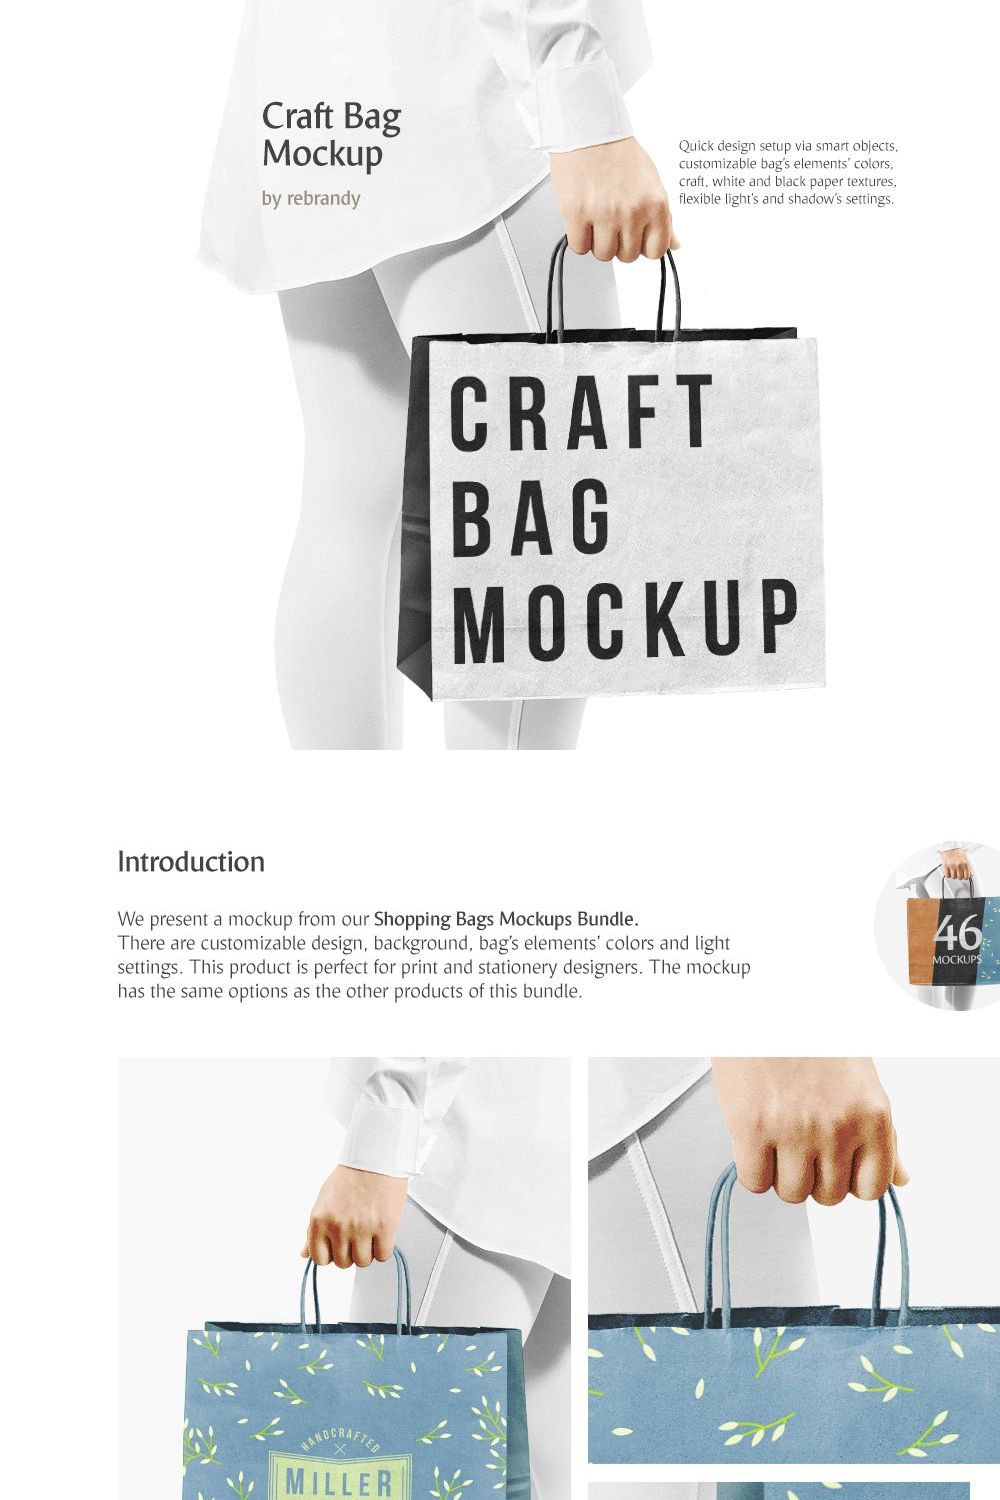 Craft Bag Mockup pinterest preview image.